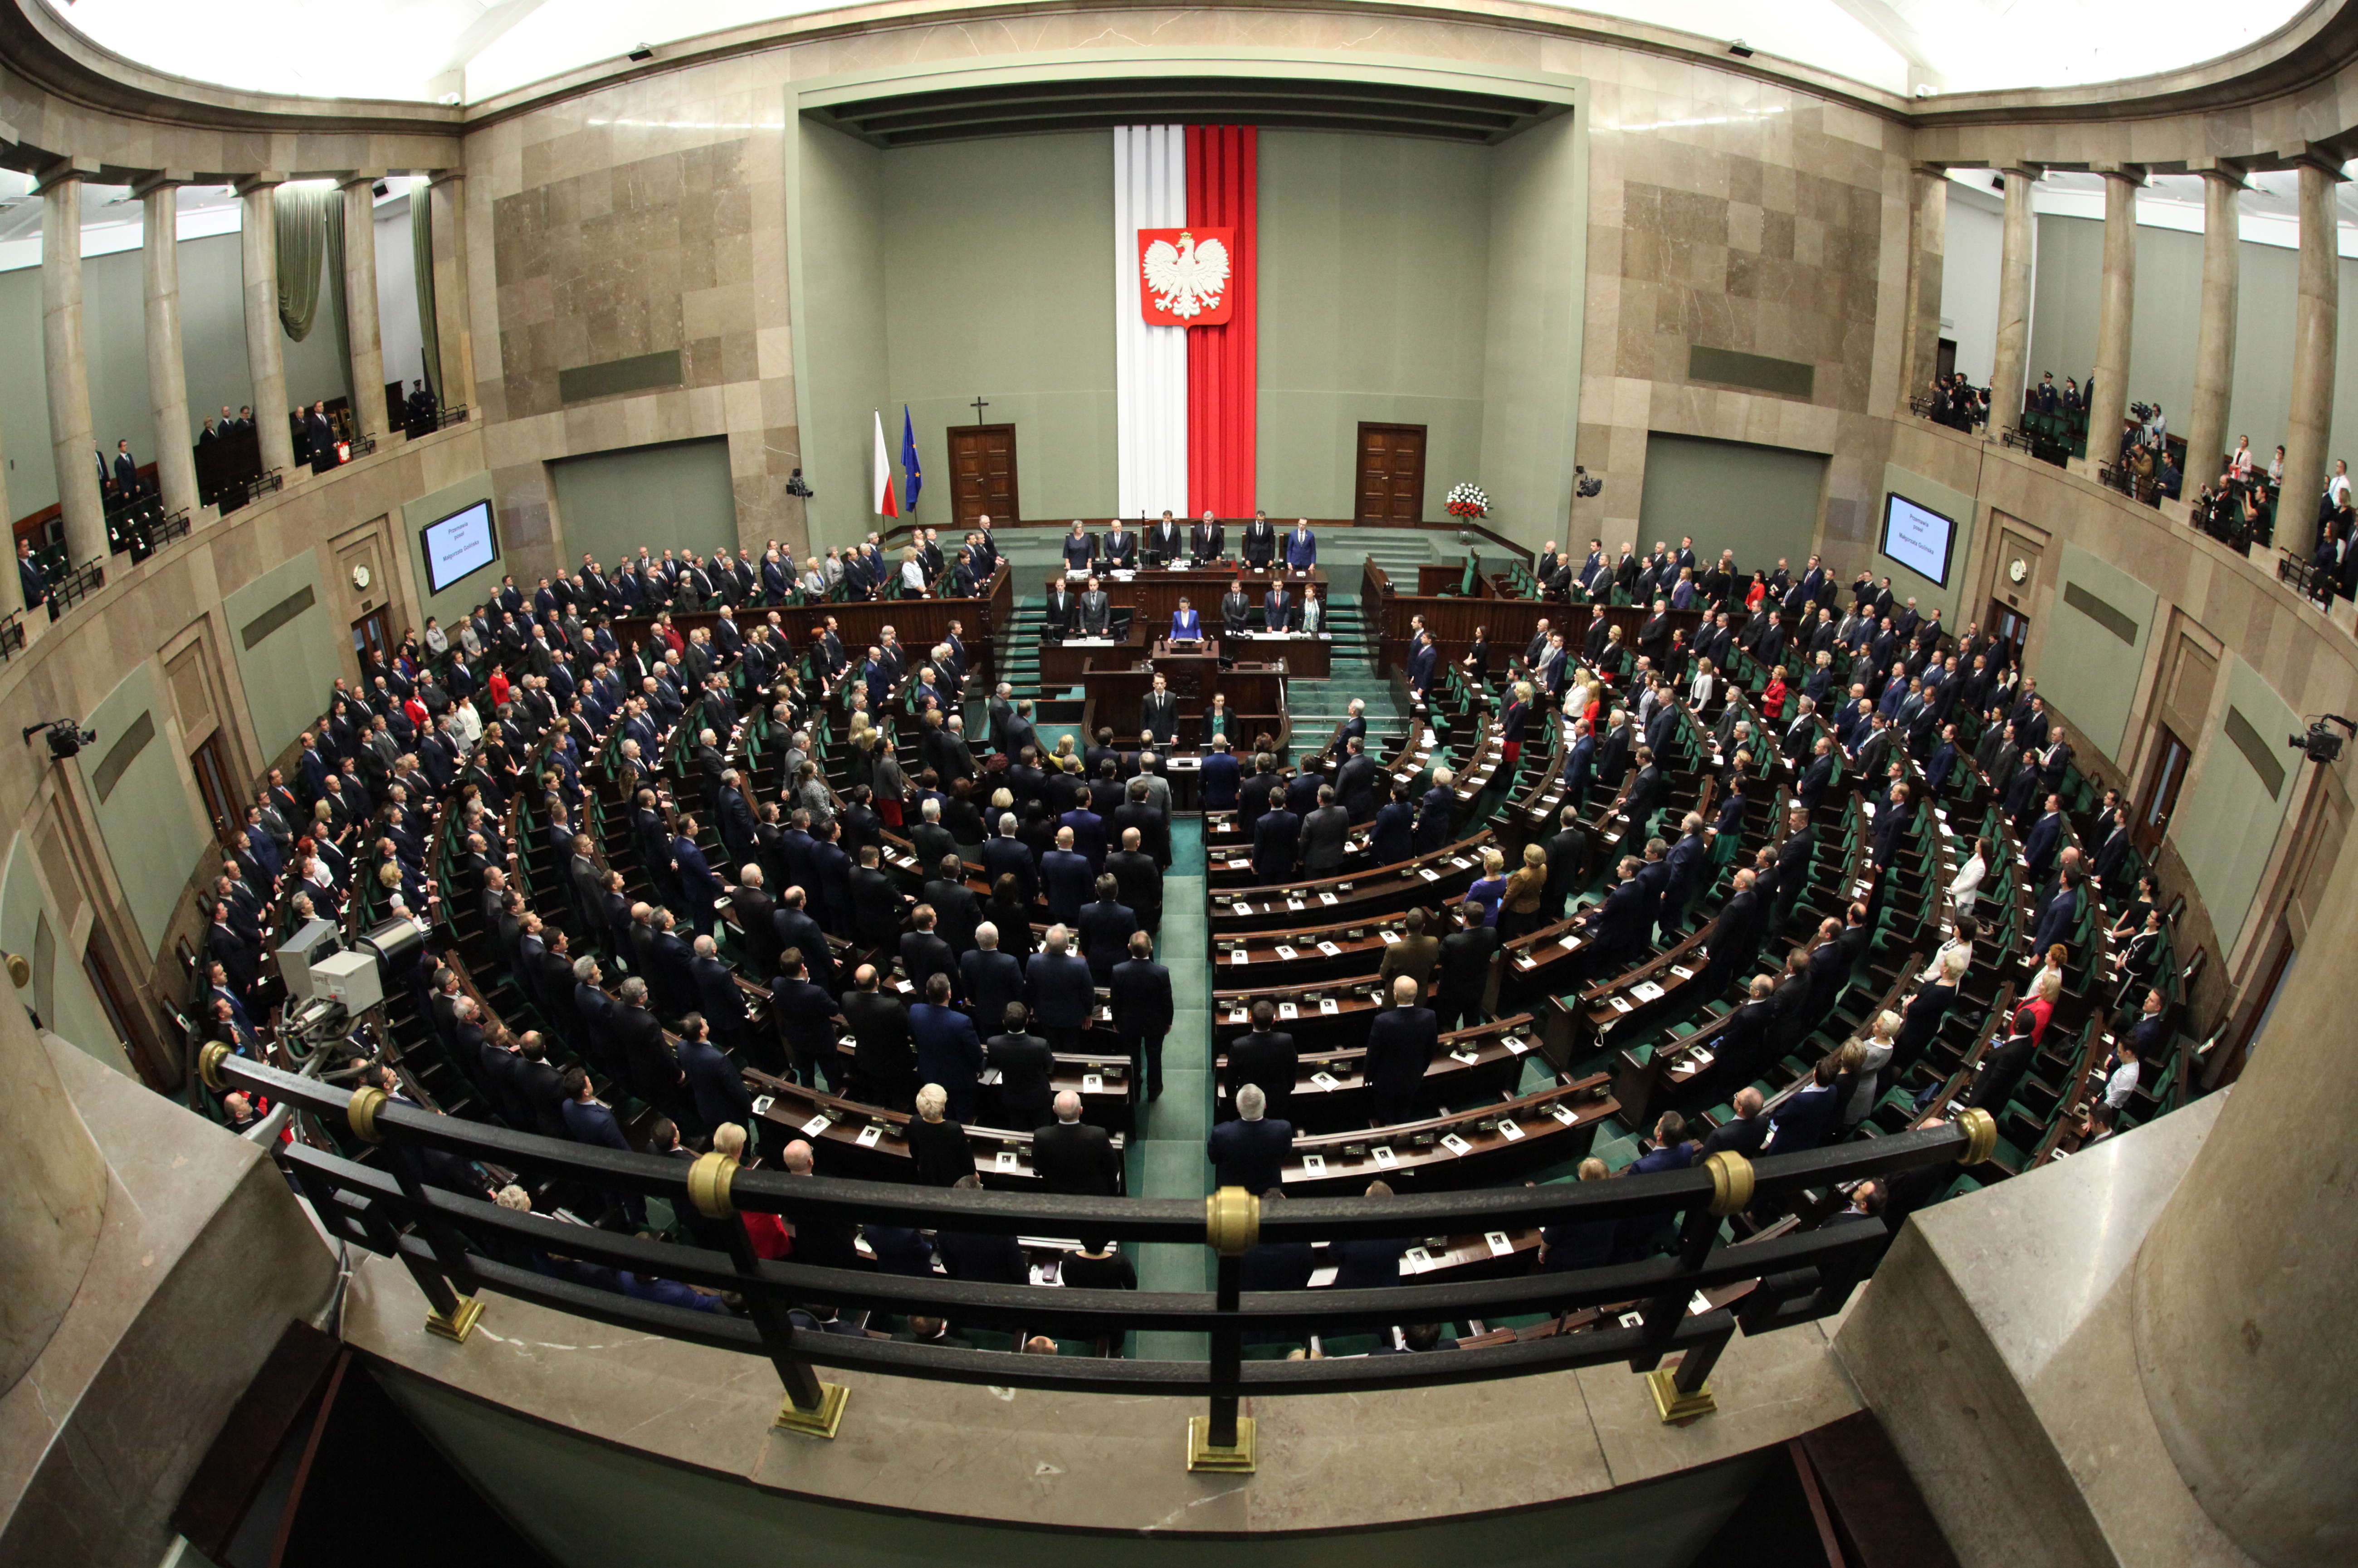 Sala Posiedzeń w Sejmie, fot. Kancelaria Senatu Rzeczypospolitej Polskiej, wikimedia